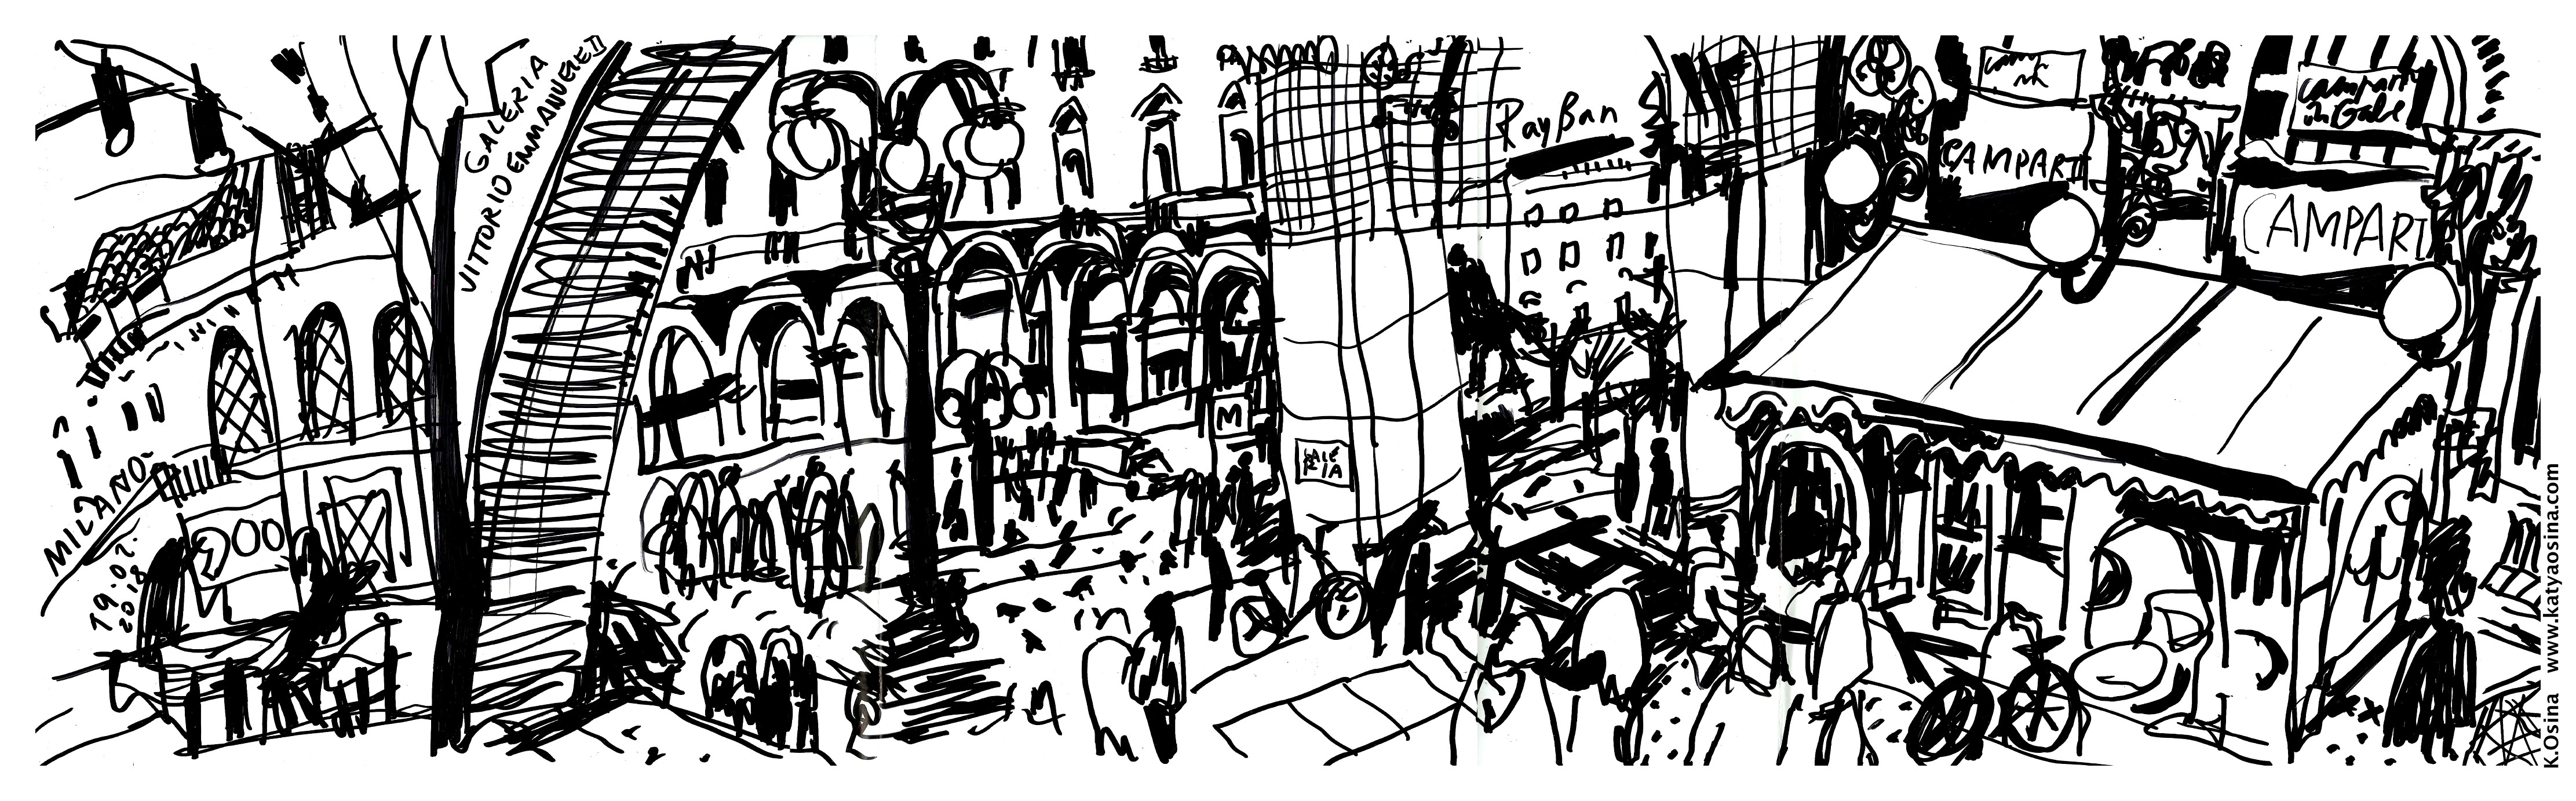 Блог Кати Осиной. Рисунки из путешествий. Мои итоги 2018 года: путешествие в рисунках по 15 городам